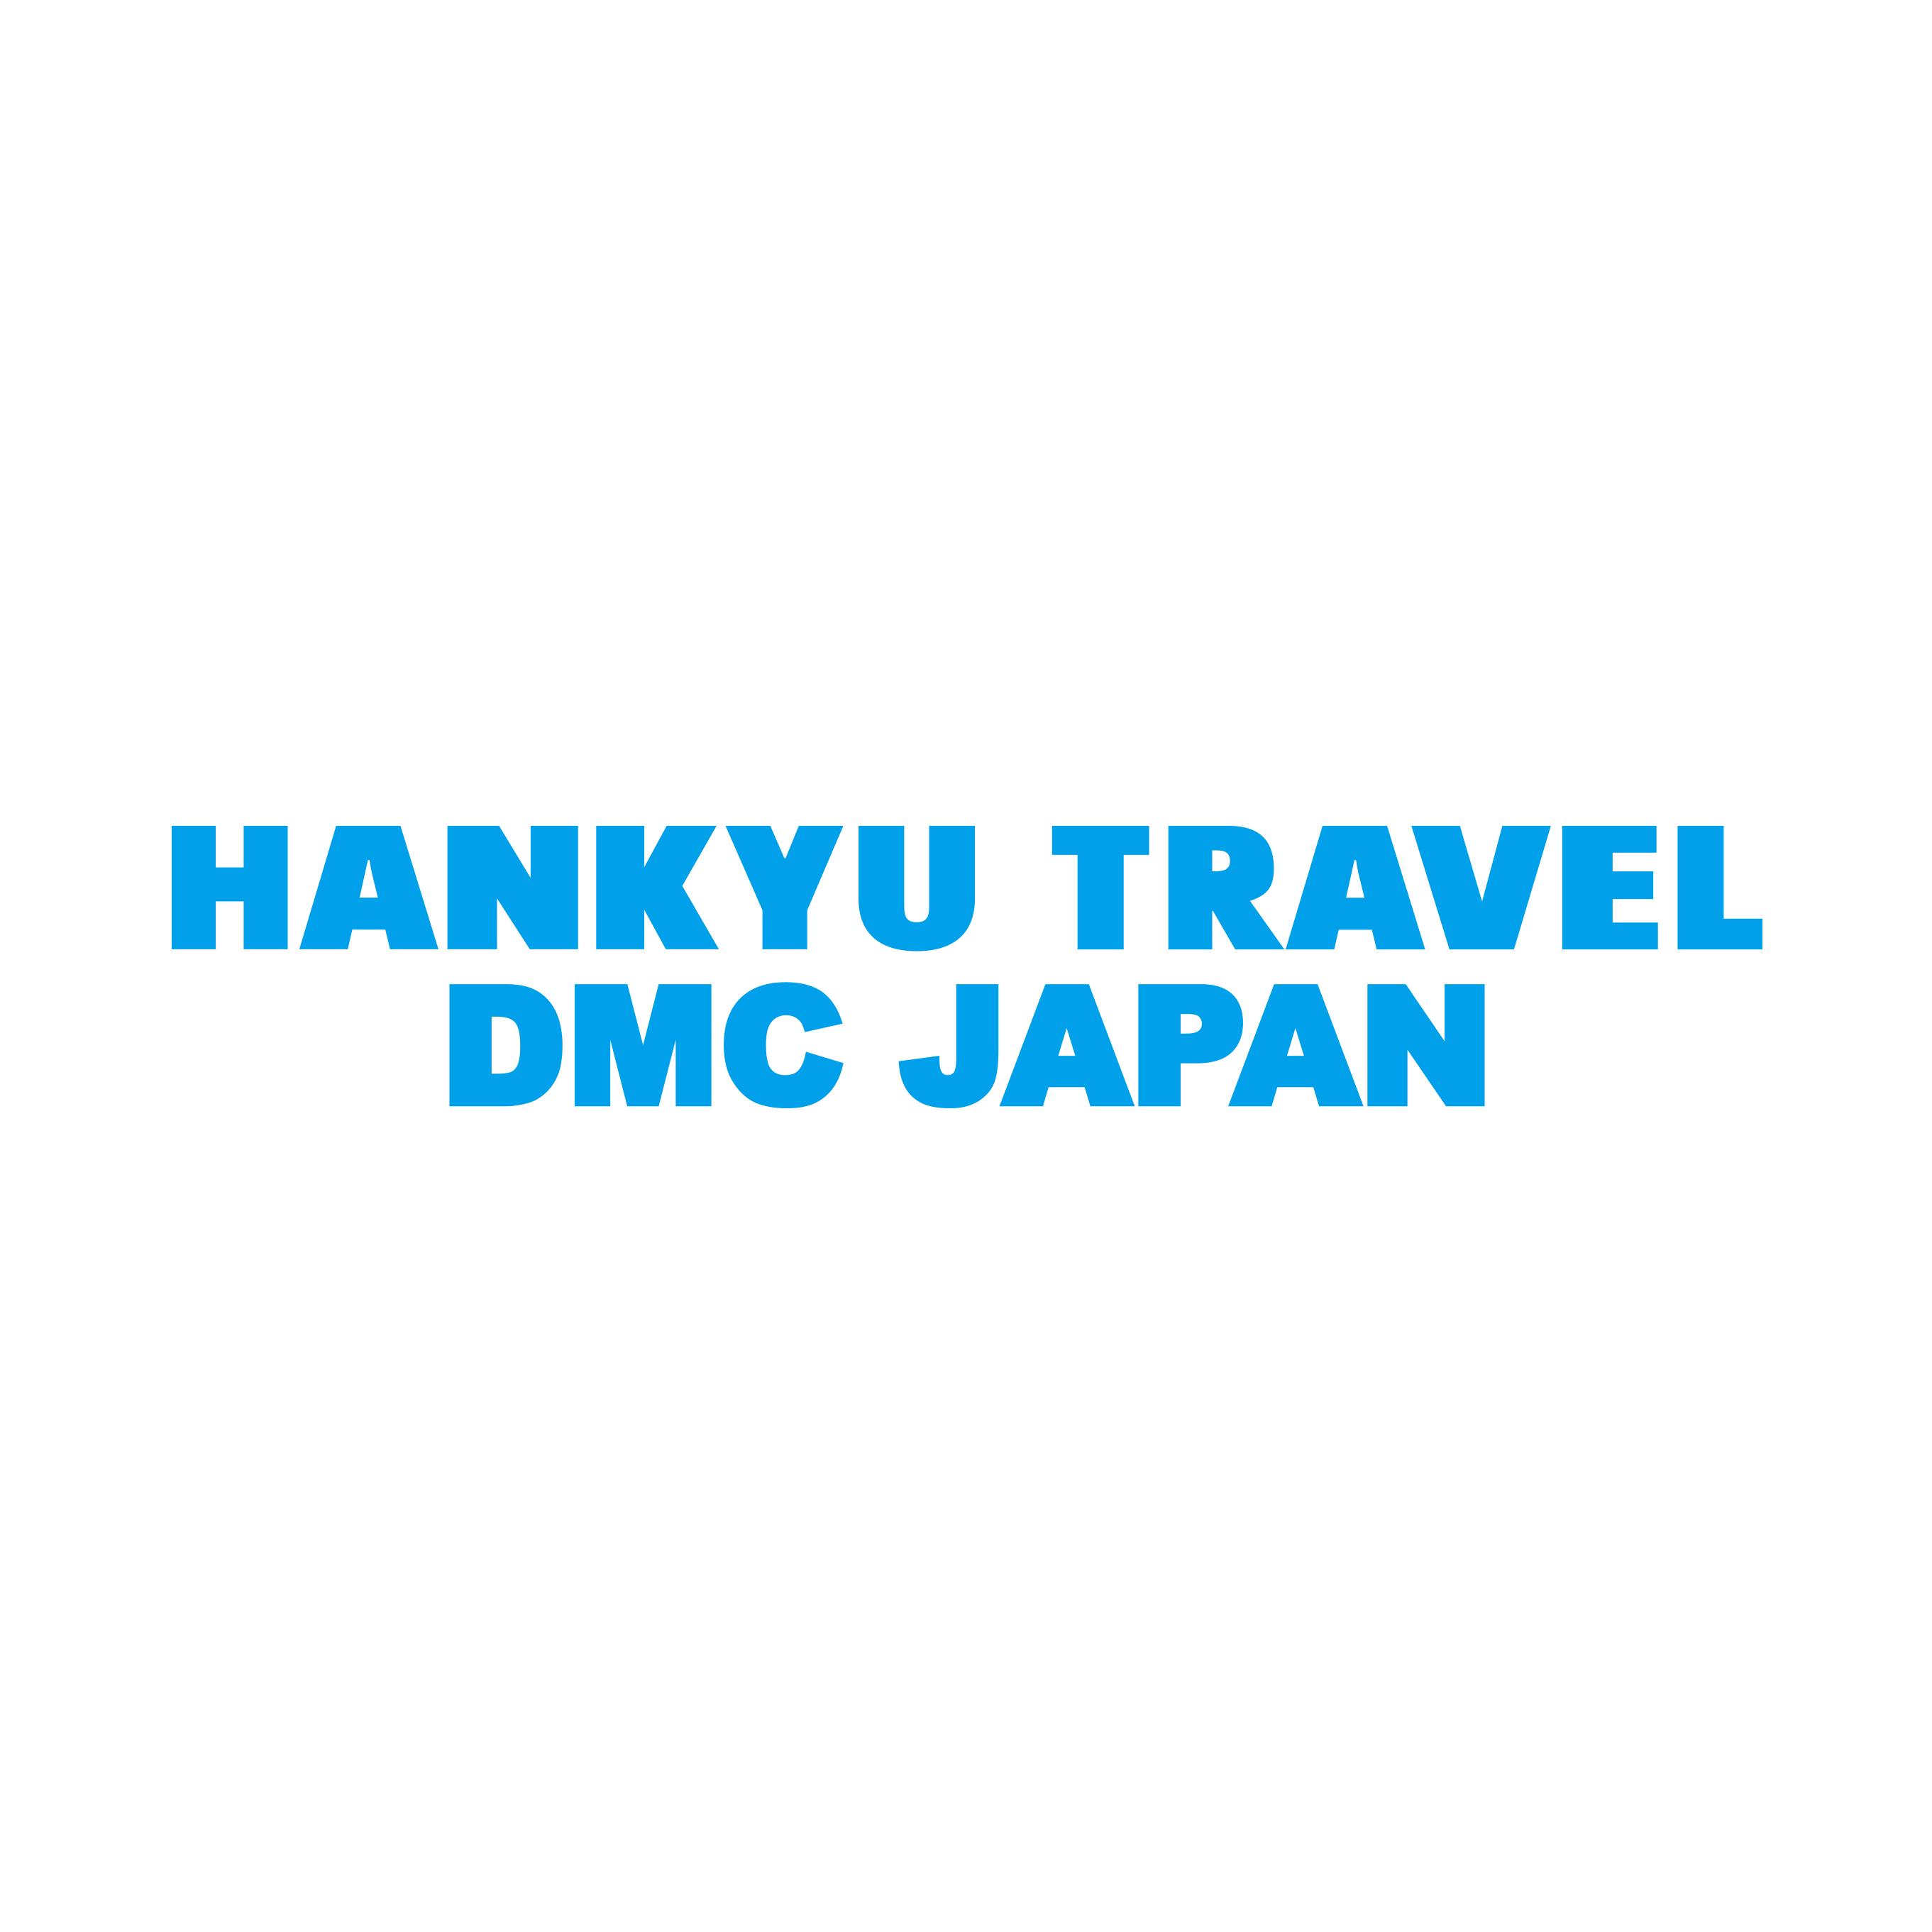 HANKYU TRAVEL DMC JAPAN